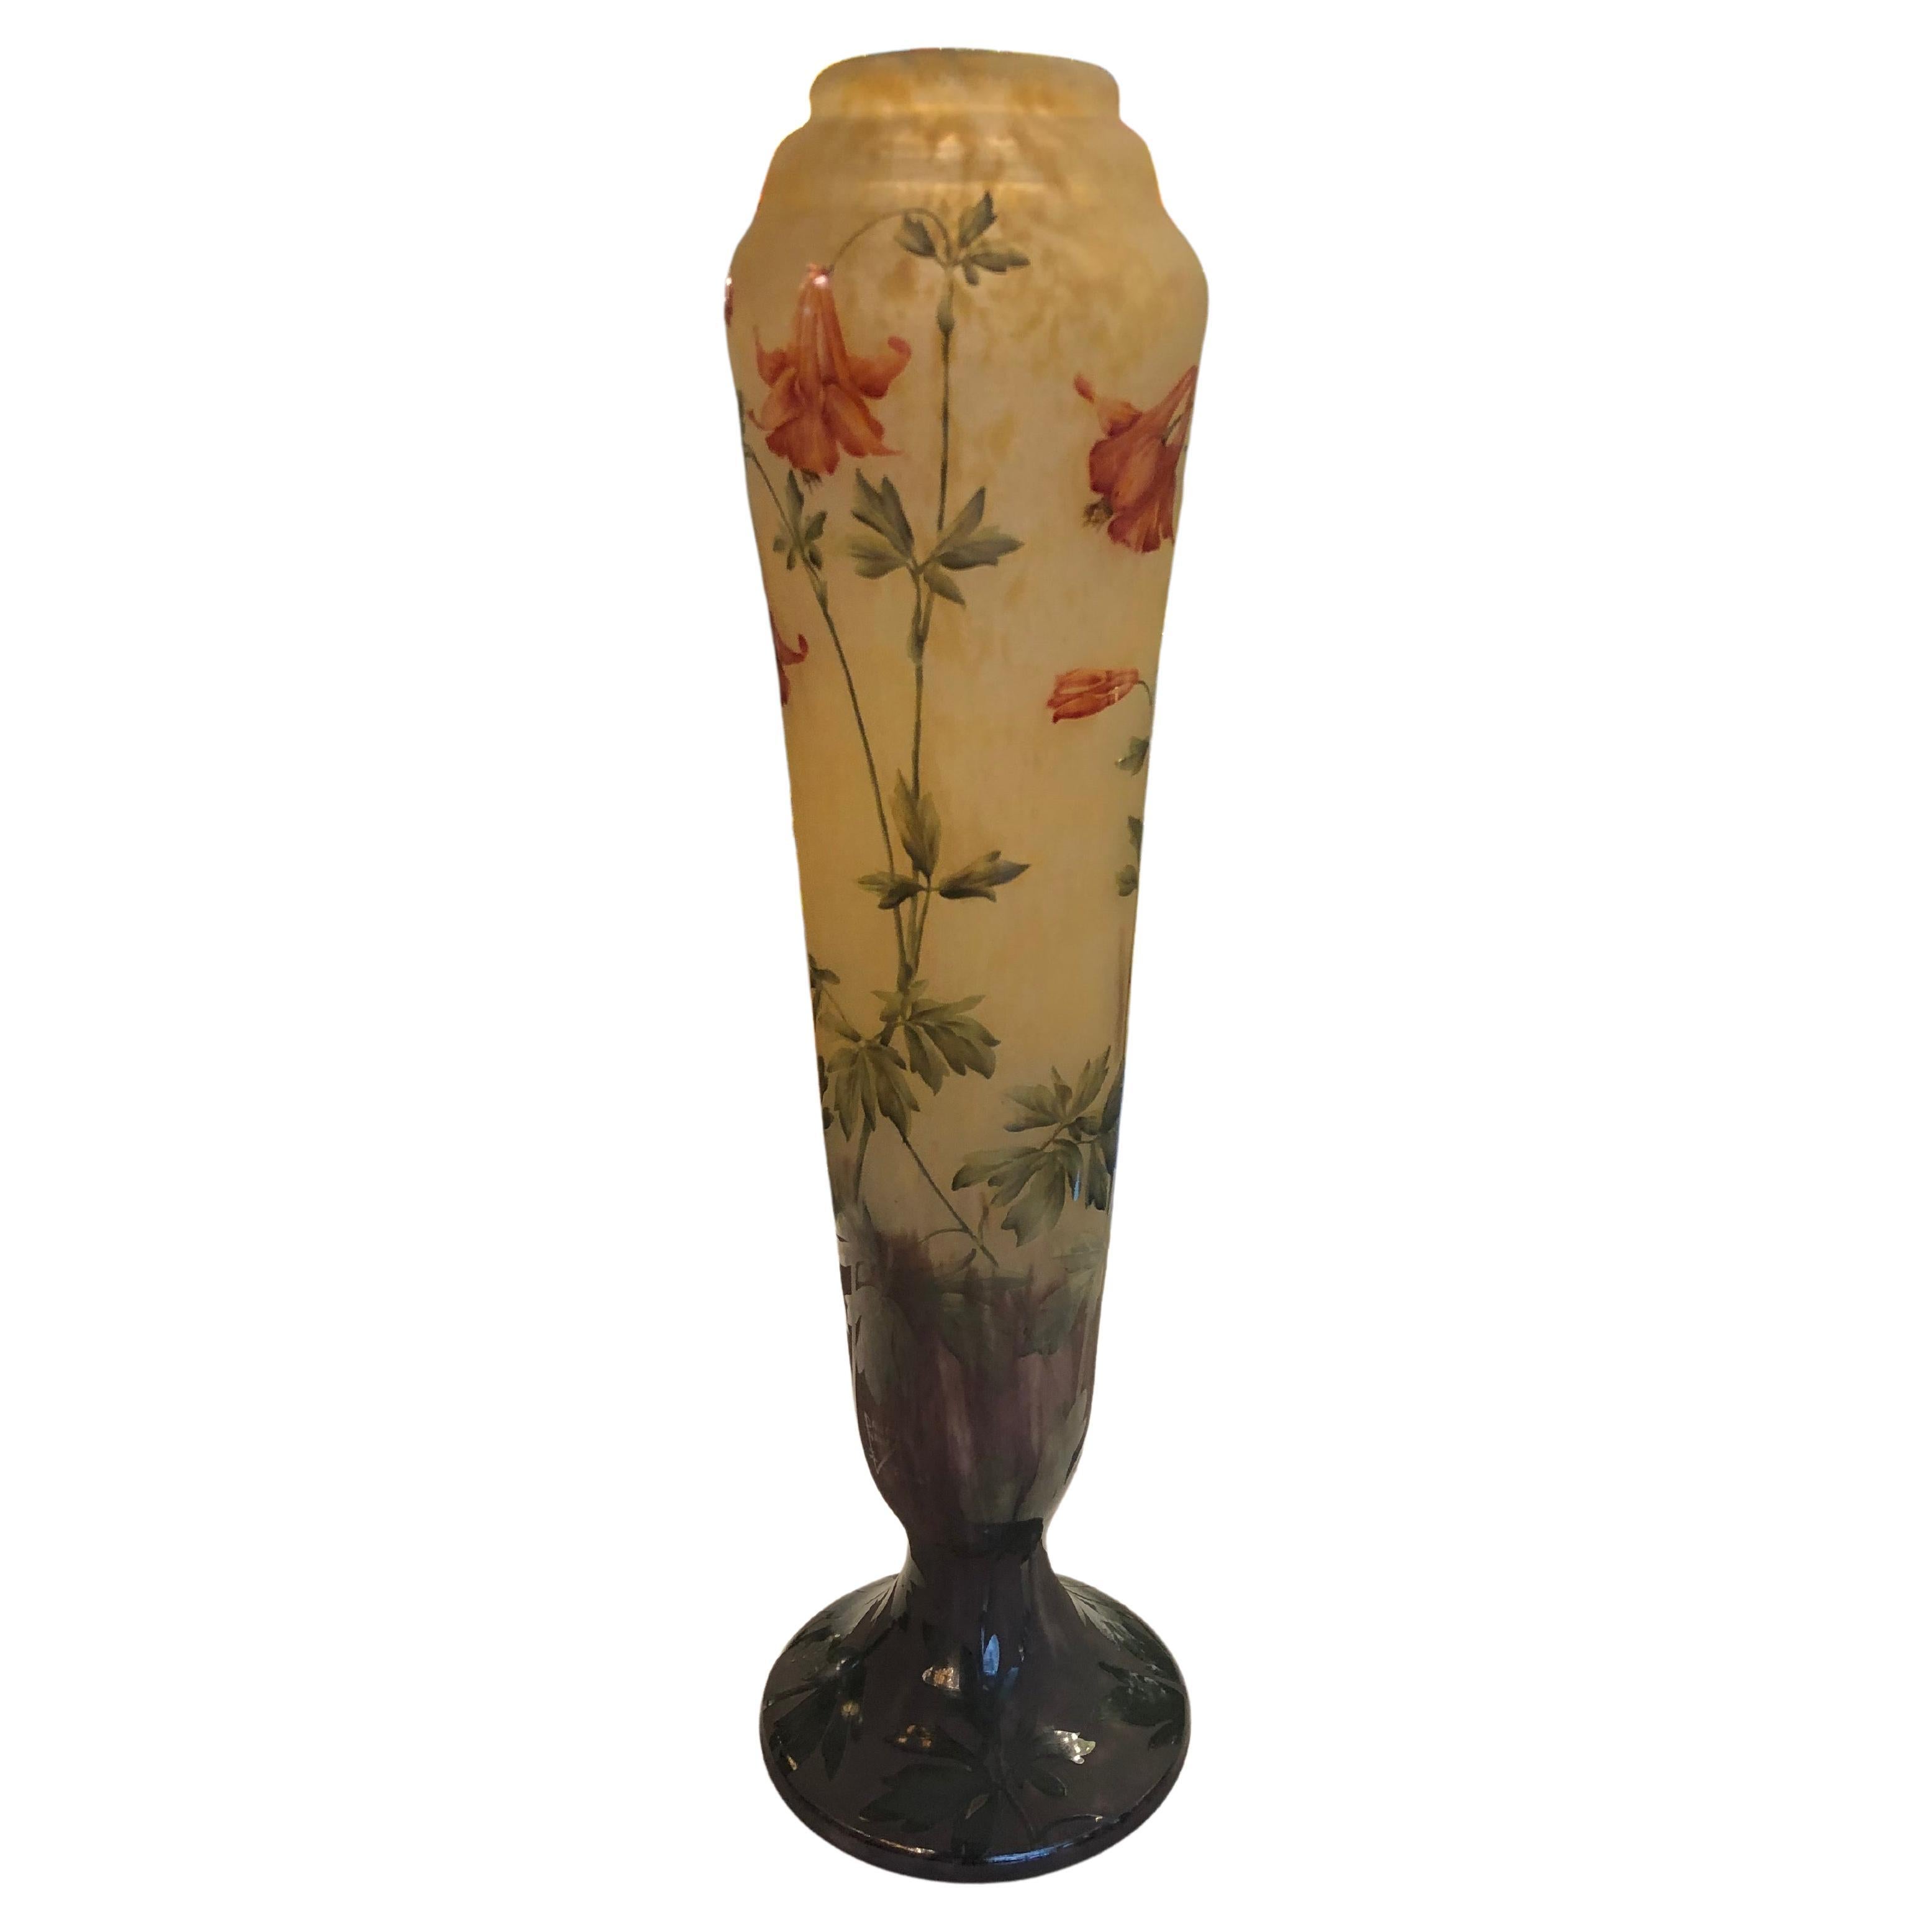 Monumentale Vase, signiert: Daum Nancy, Frankreich, Stil: Jugendstil, 1910